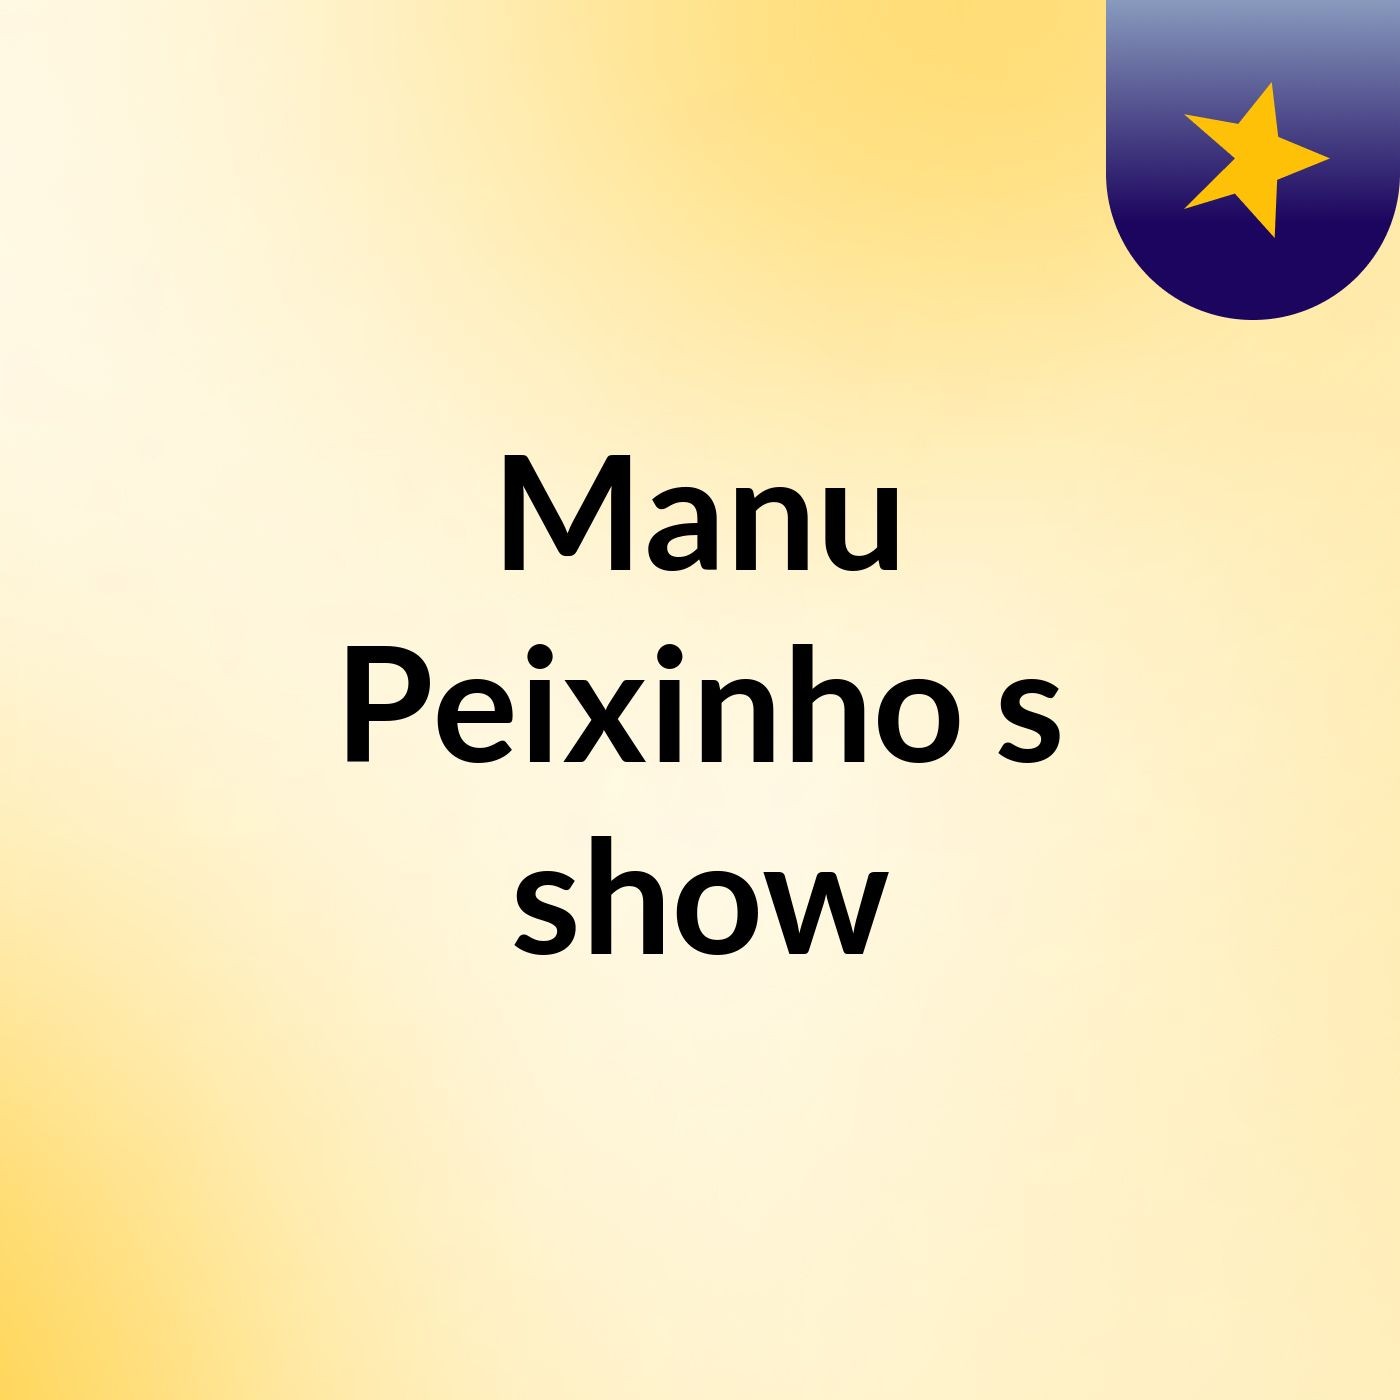 Manu Peixinho's show